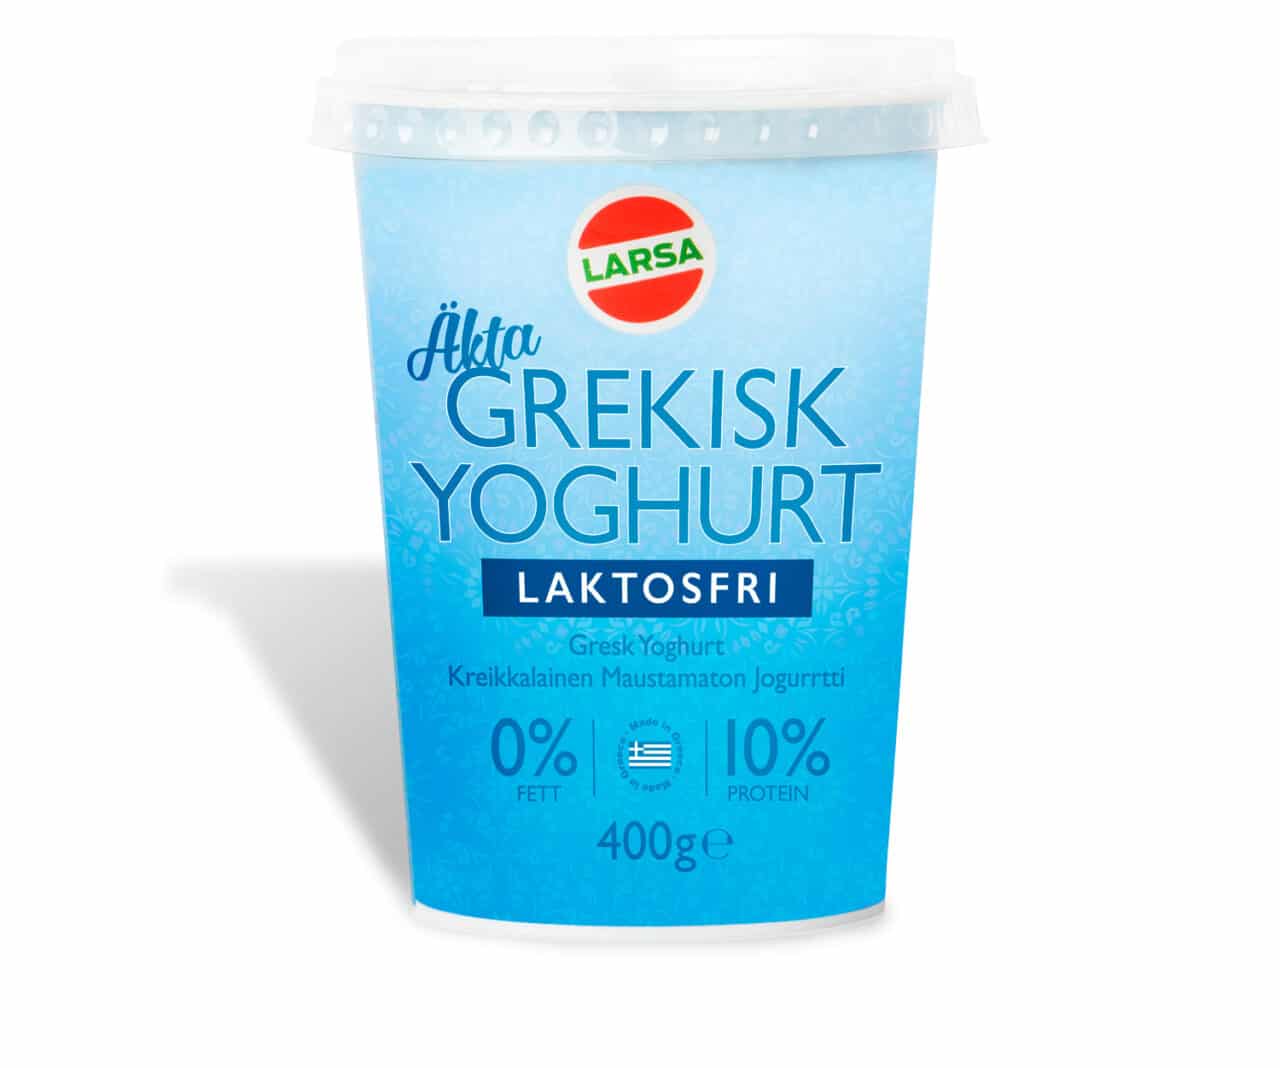 Hög blå burk med laktosfri yoghurt från Larsa Foods.